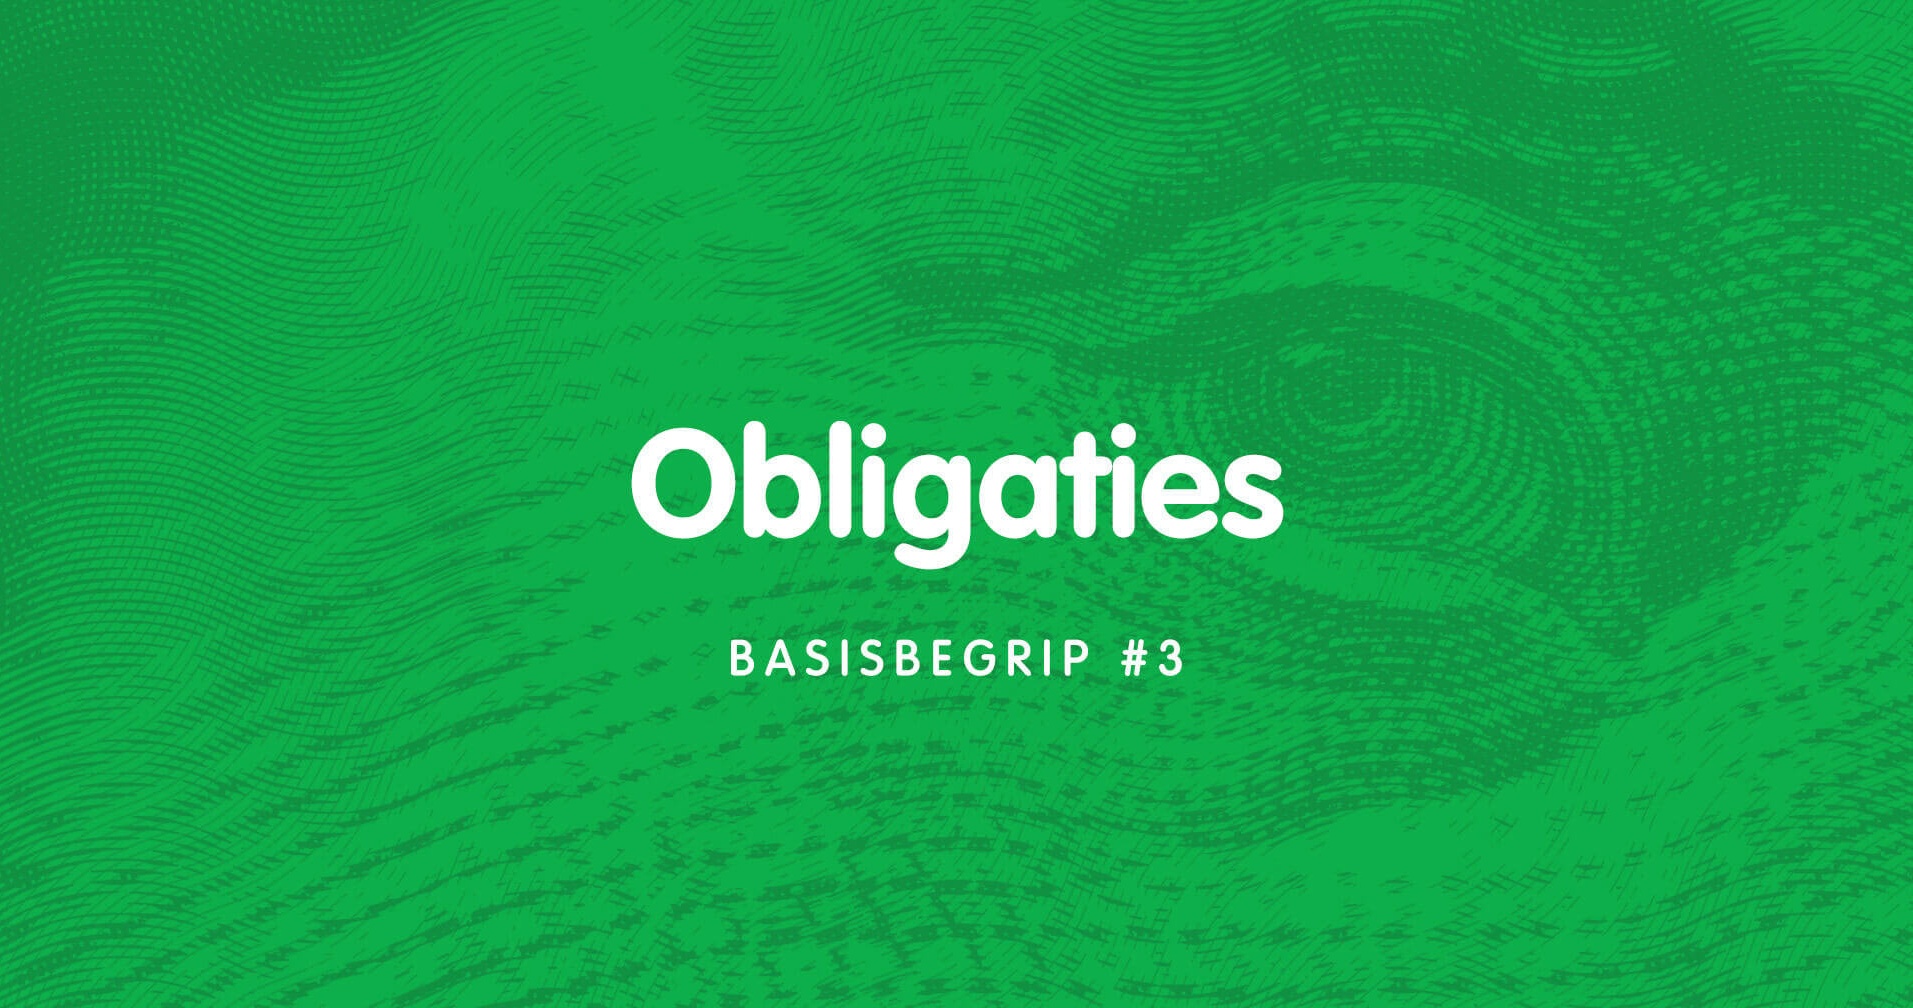 Basisbegrip #3: Obligaties